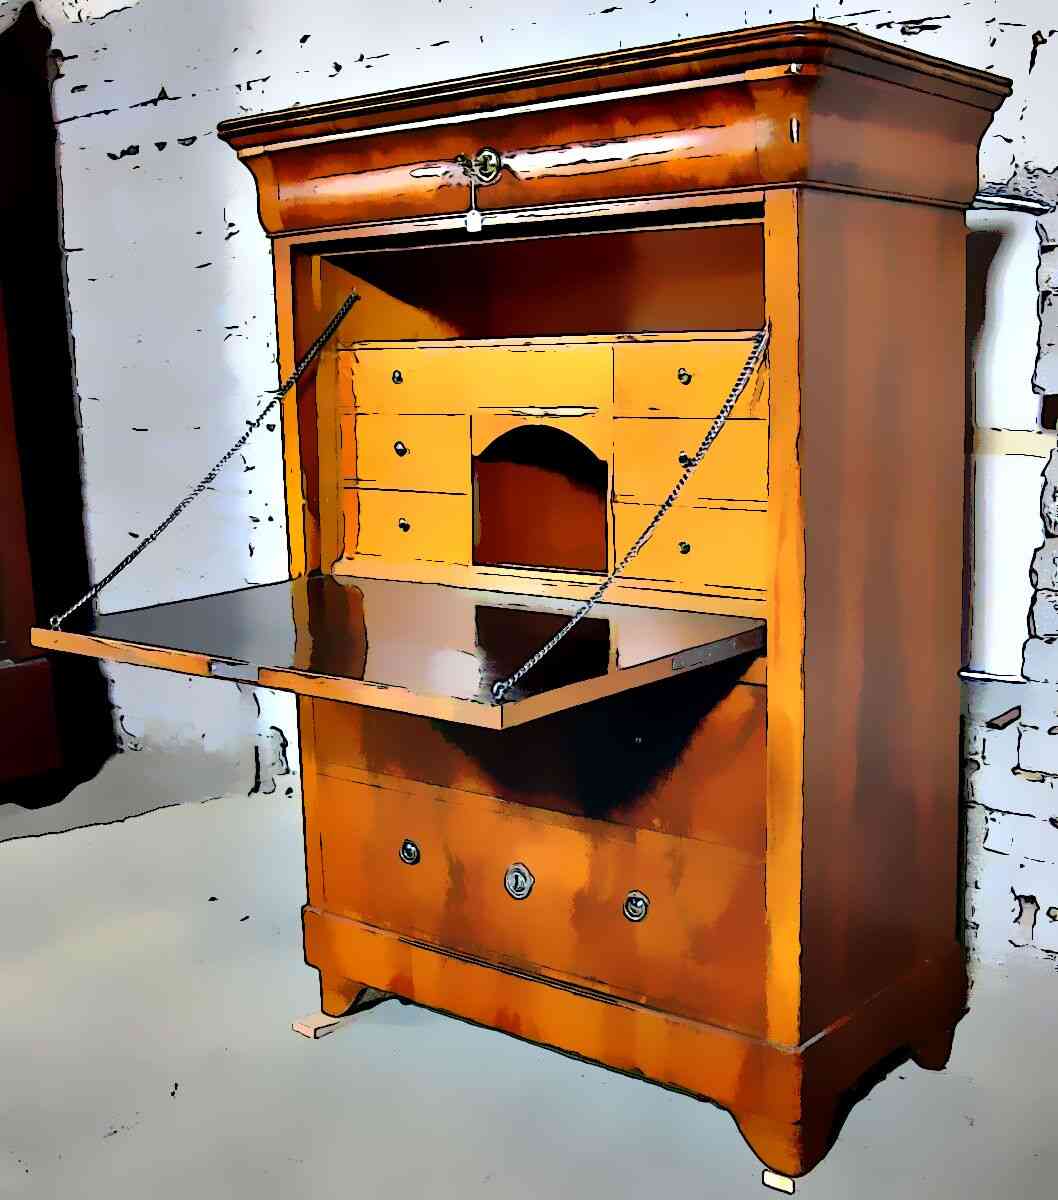 Furniture secretary desk cabinet, also known as escritoires.